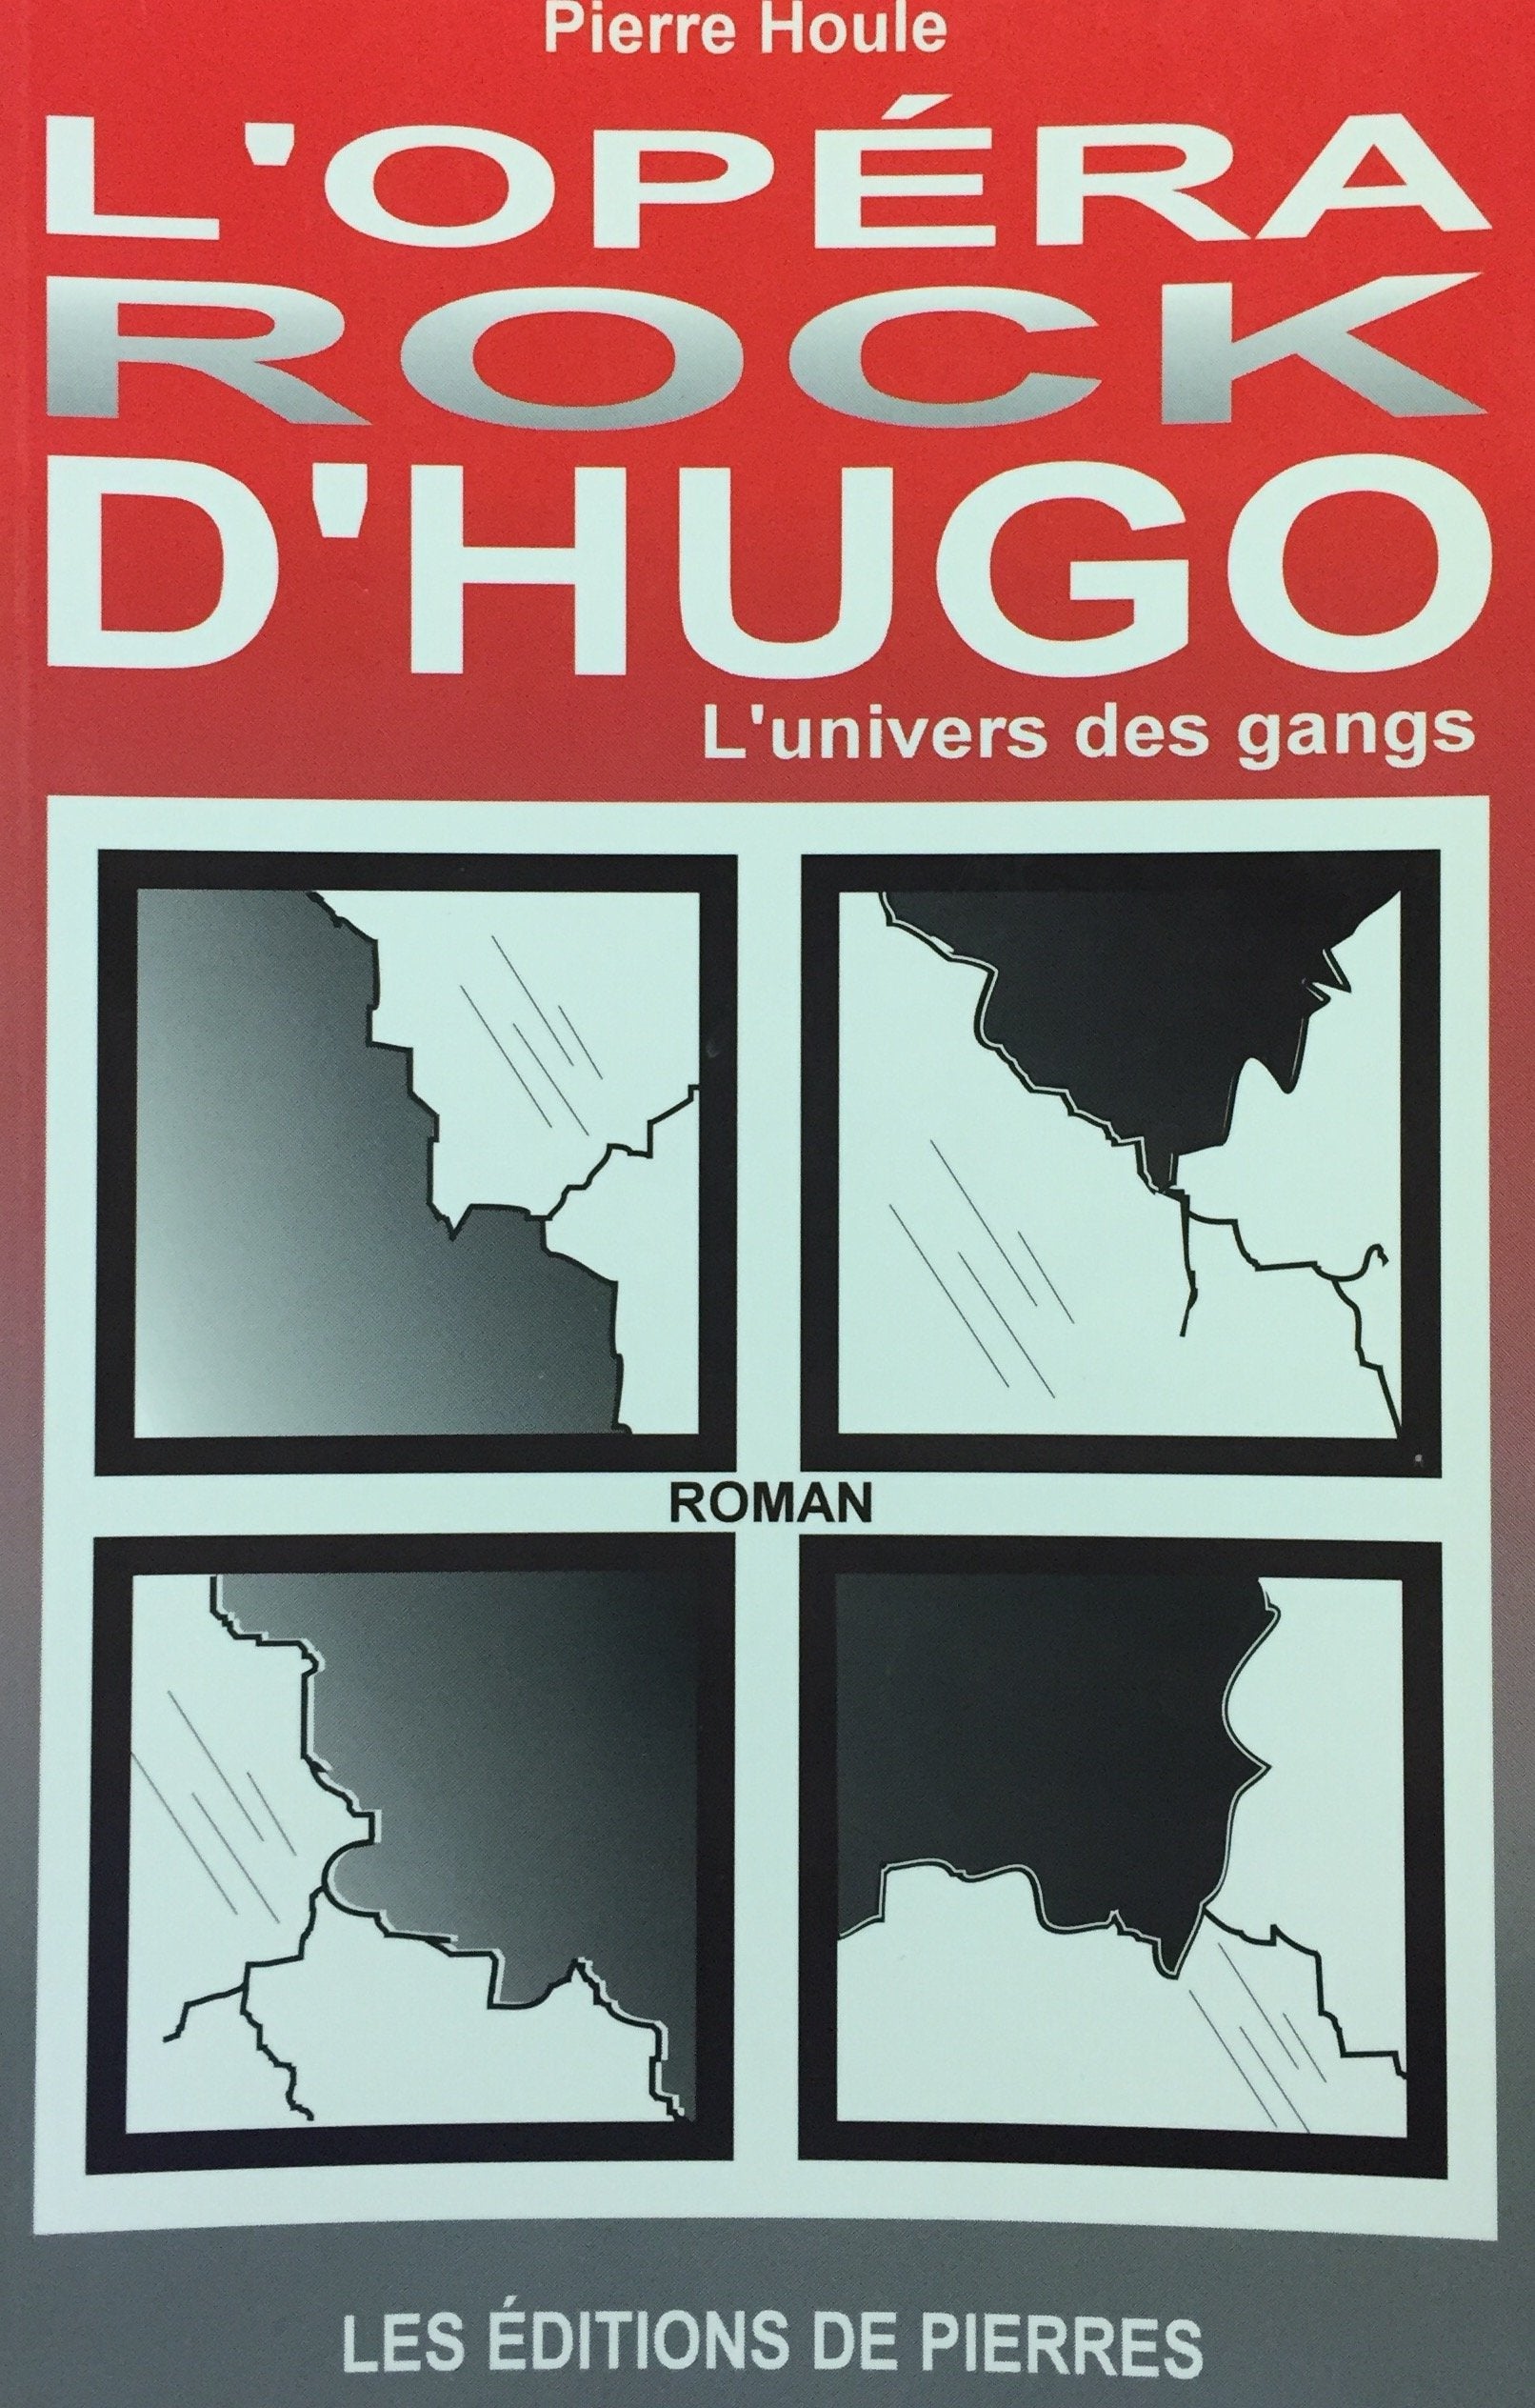 Livre ISBN 2980413208 L'opéra rock d'Hugo : L'univers des gangs (Pierre Houle)